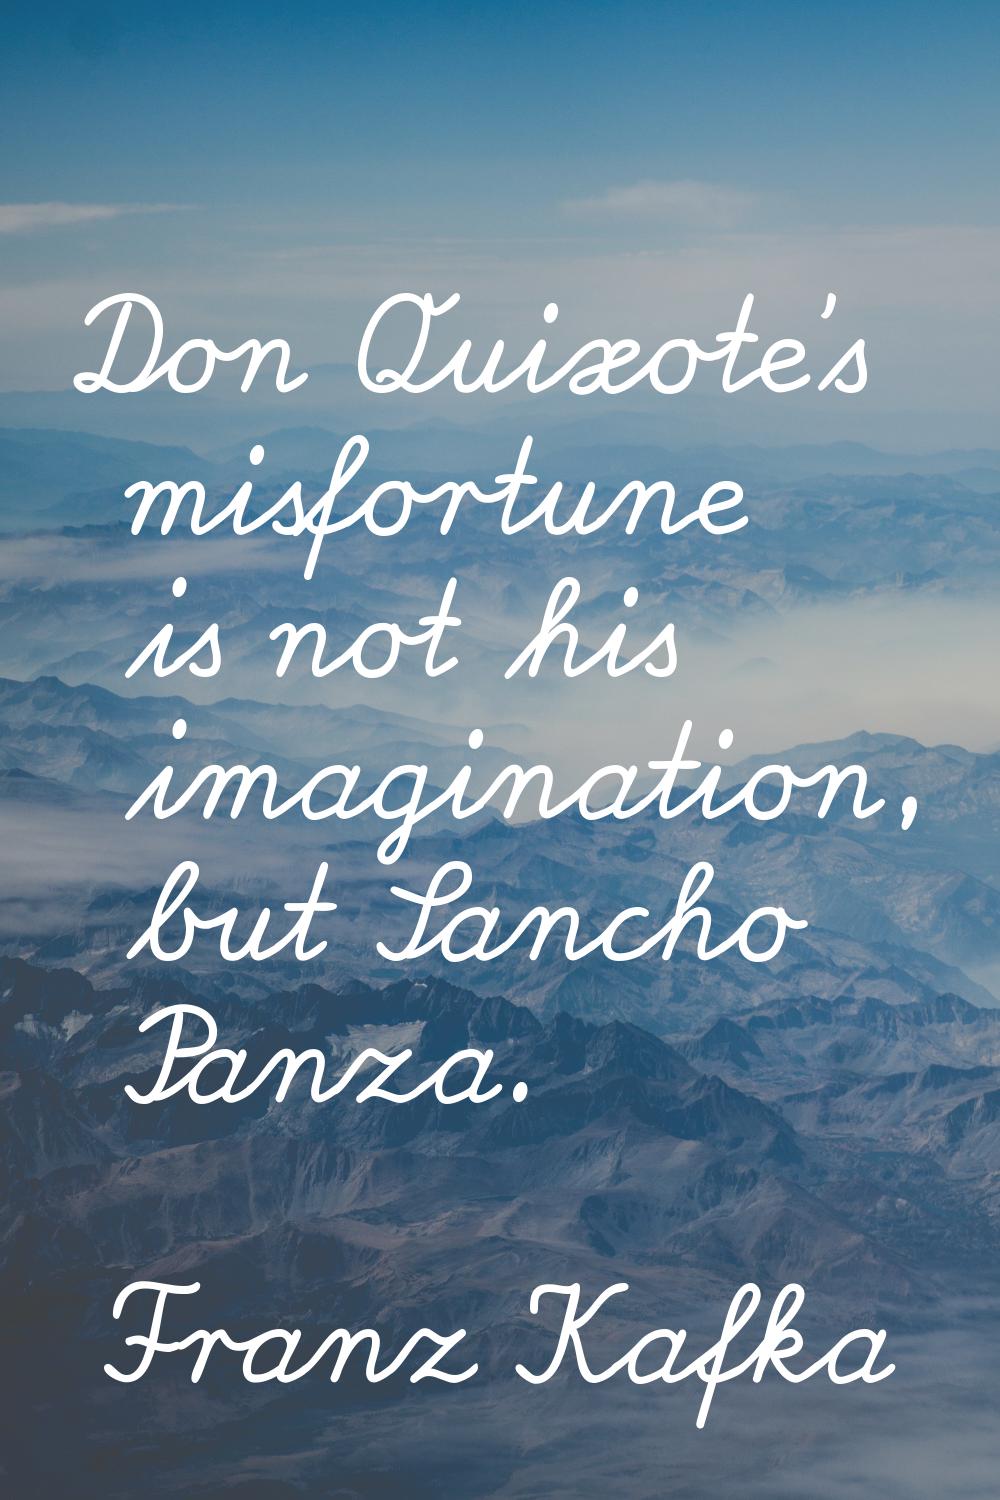 Don Quixote's misfortune is not his imagination, but Sancho Panza.